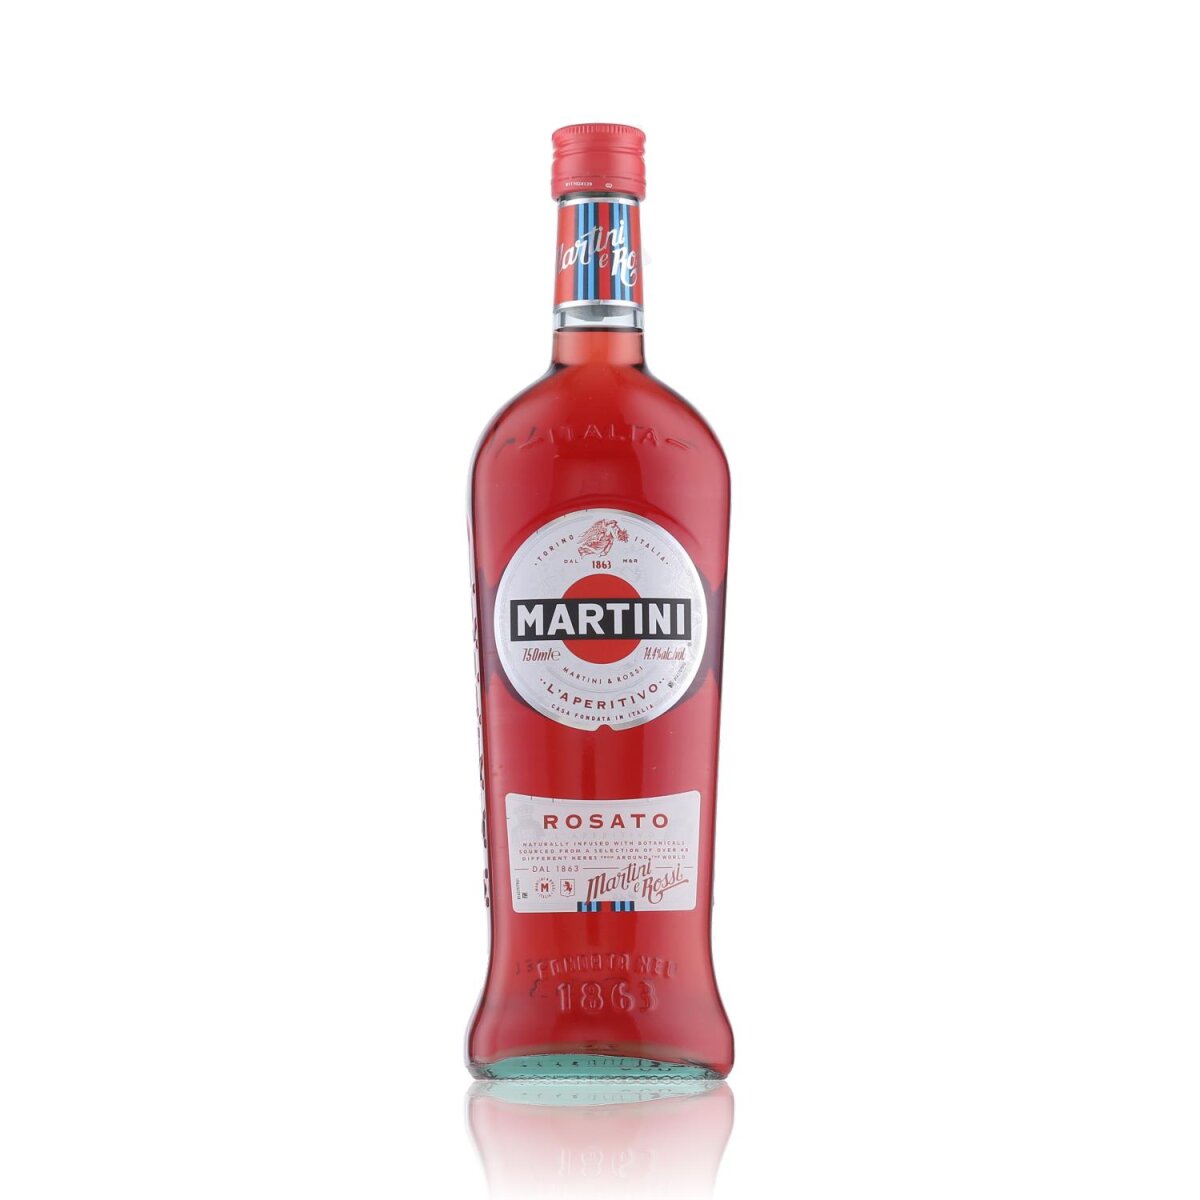 Rosato 14,4% Vol. 0,75l Martini Wermut